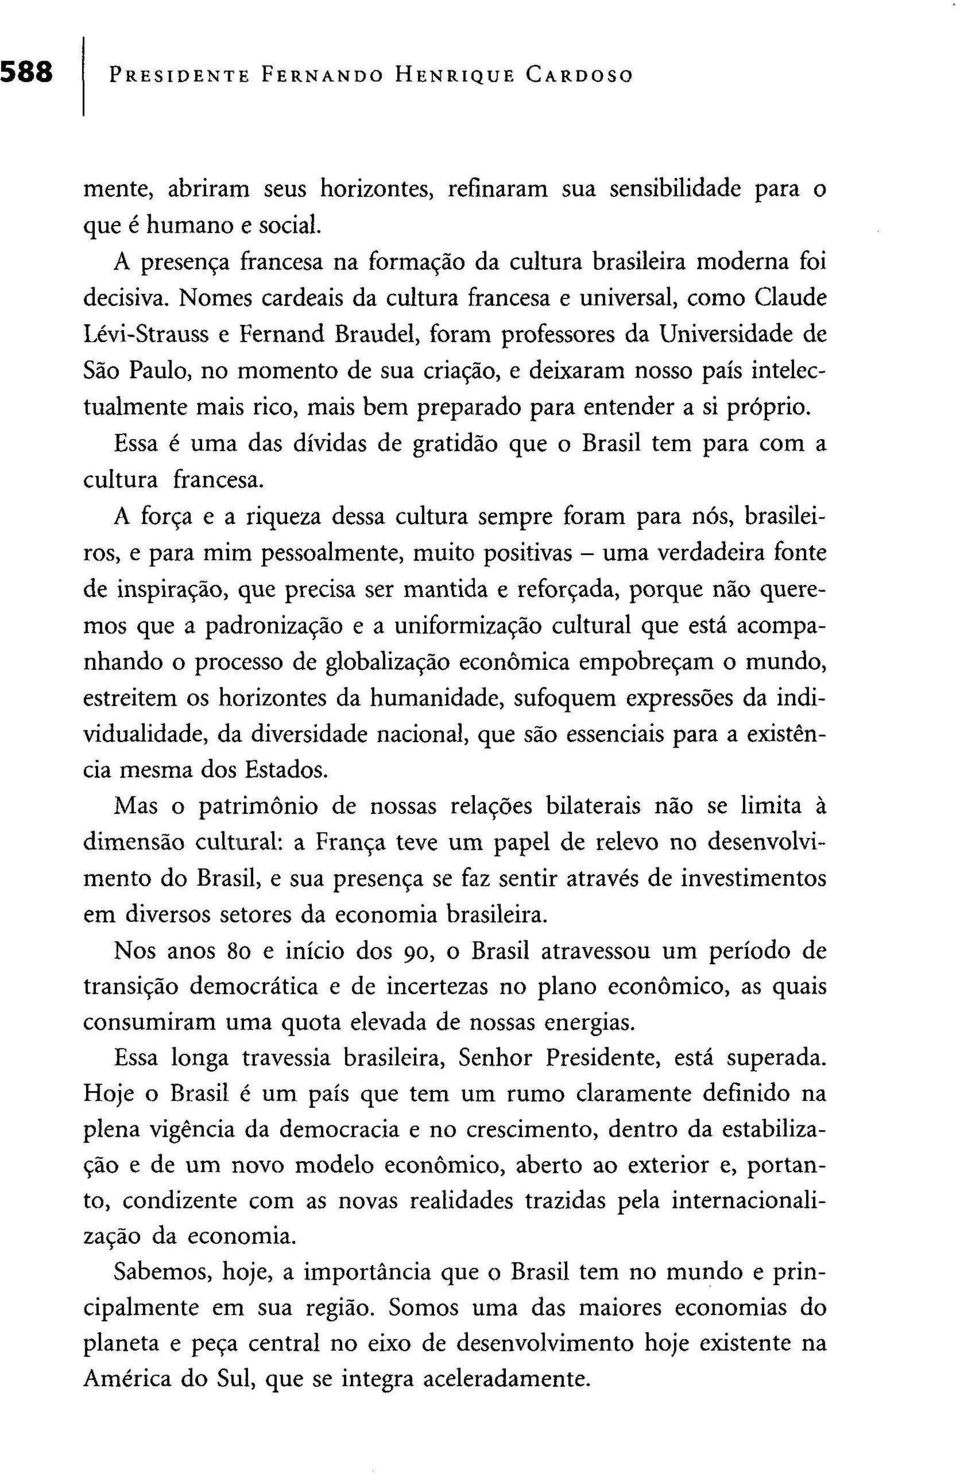 Nomes cardeais da cultura francesa e universal, como Claude Lévi-Strauss e Fernand Braudel, foram professores da Universidade de São Paulo, no momento de sua criação, e deixaram nosso país